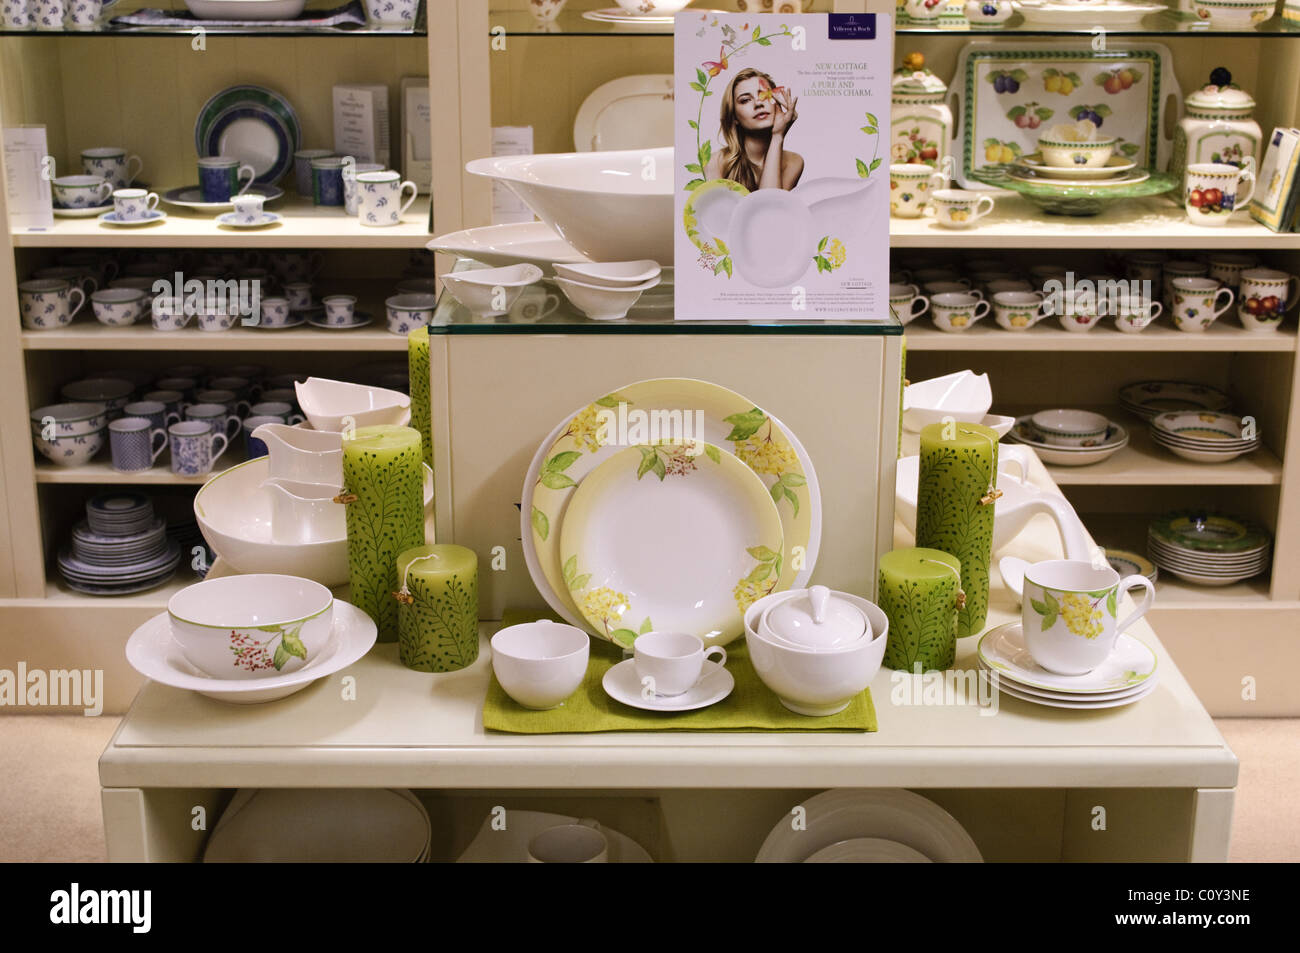 Vaisselle Villeroy & Boch en exposition dans un magasin de porcelaine Photo  Stock - Alamy